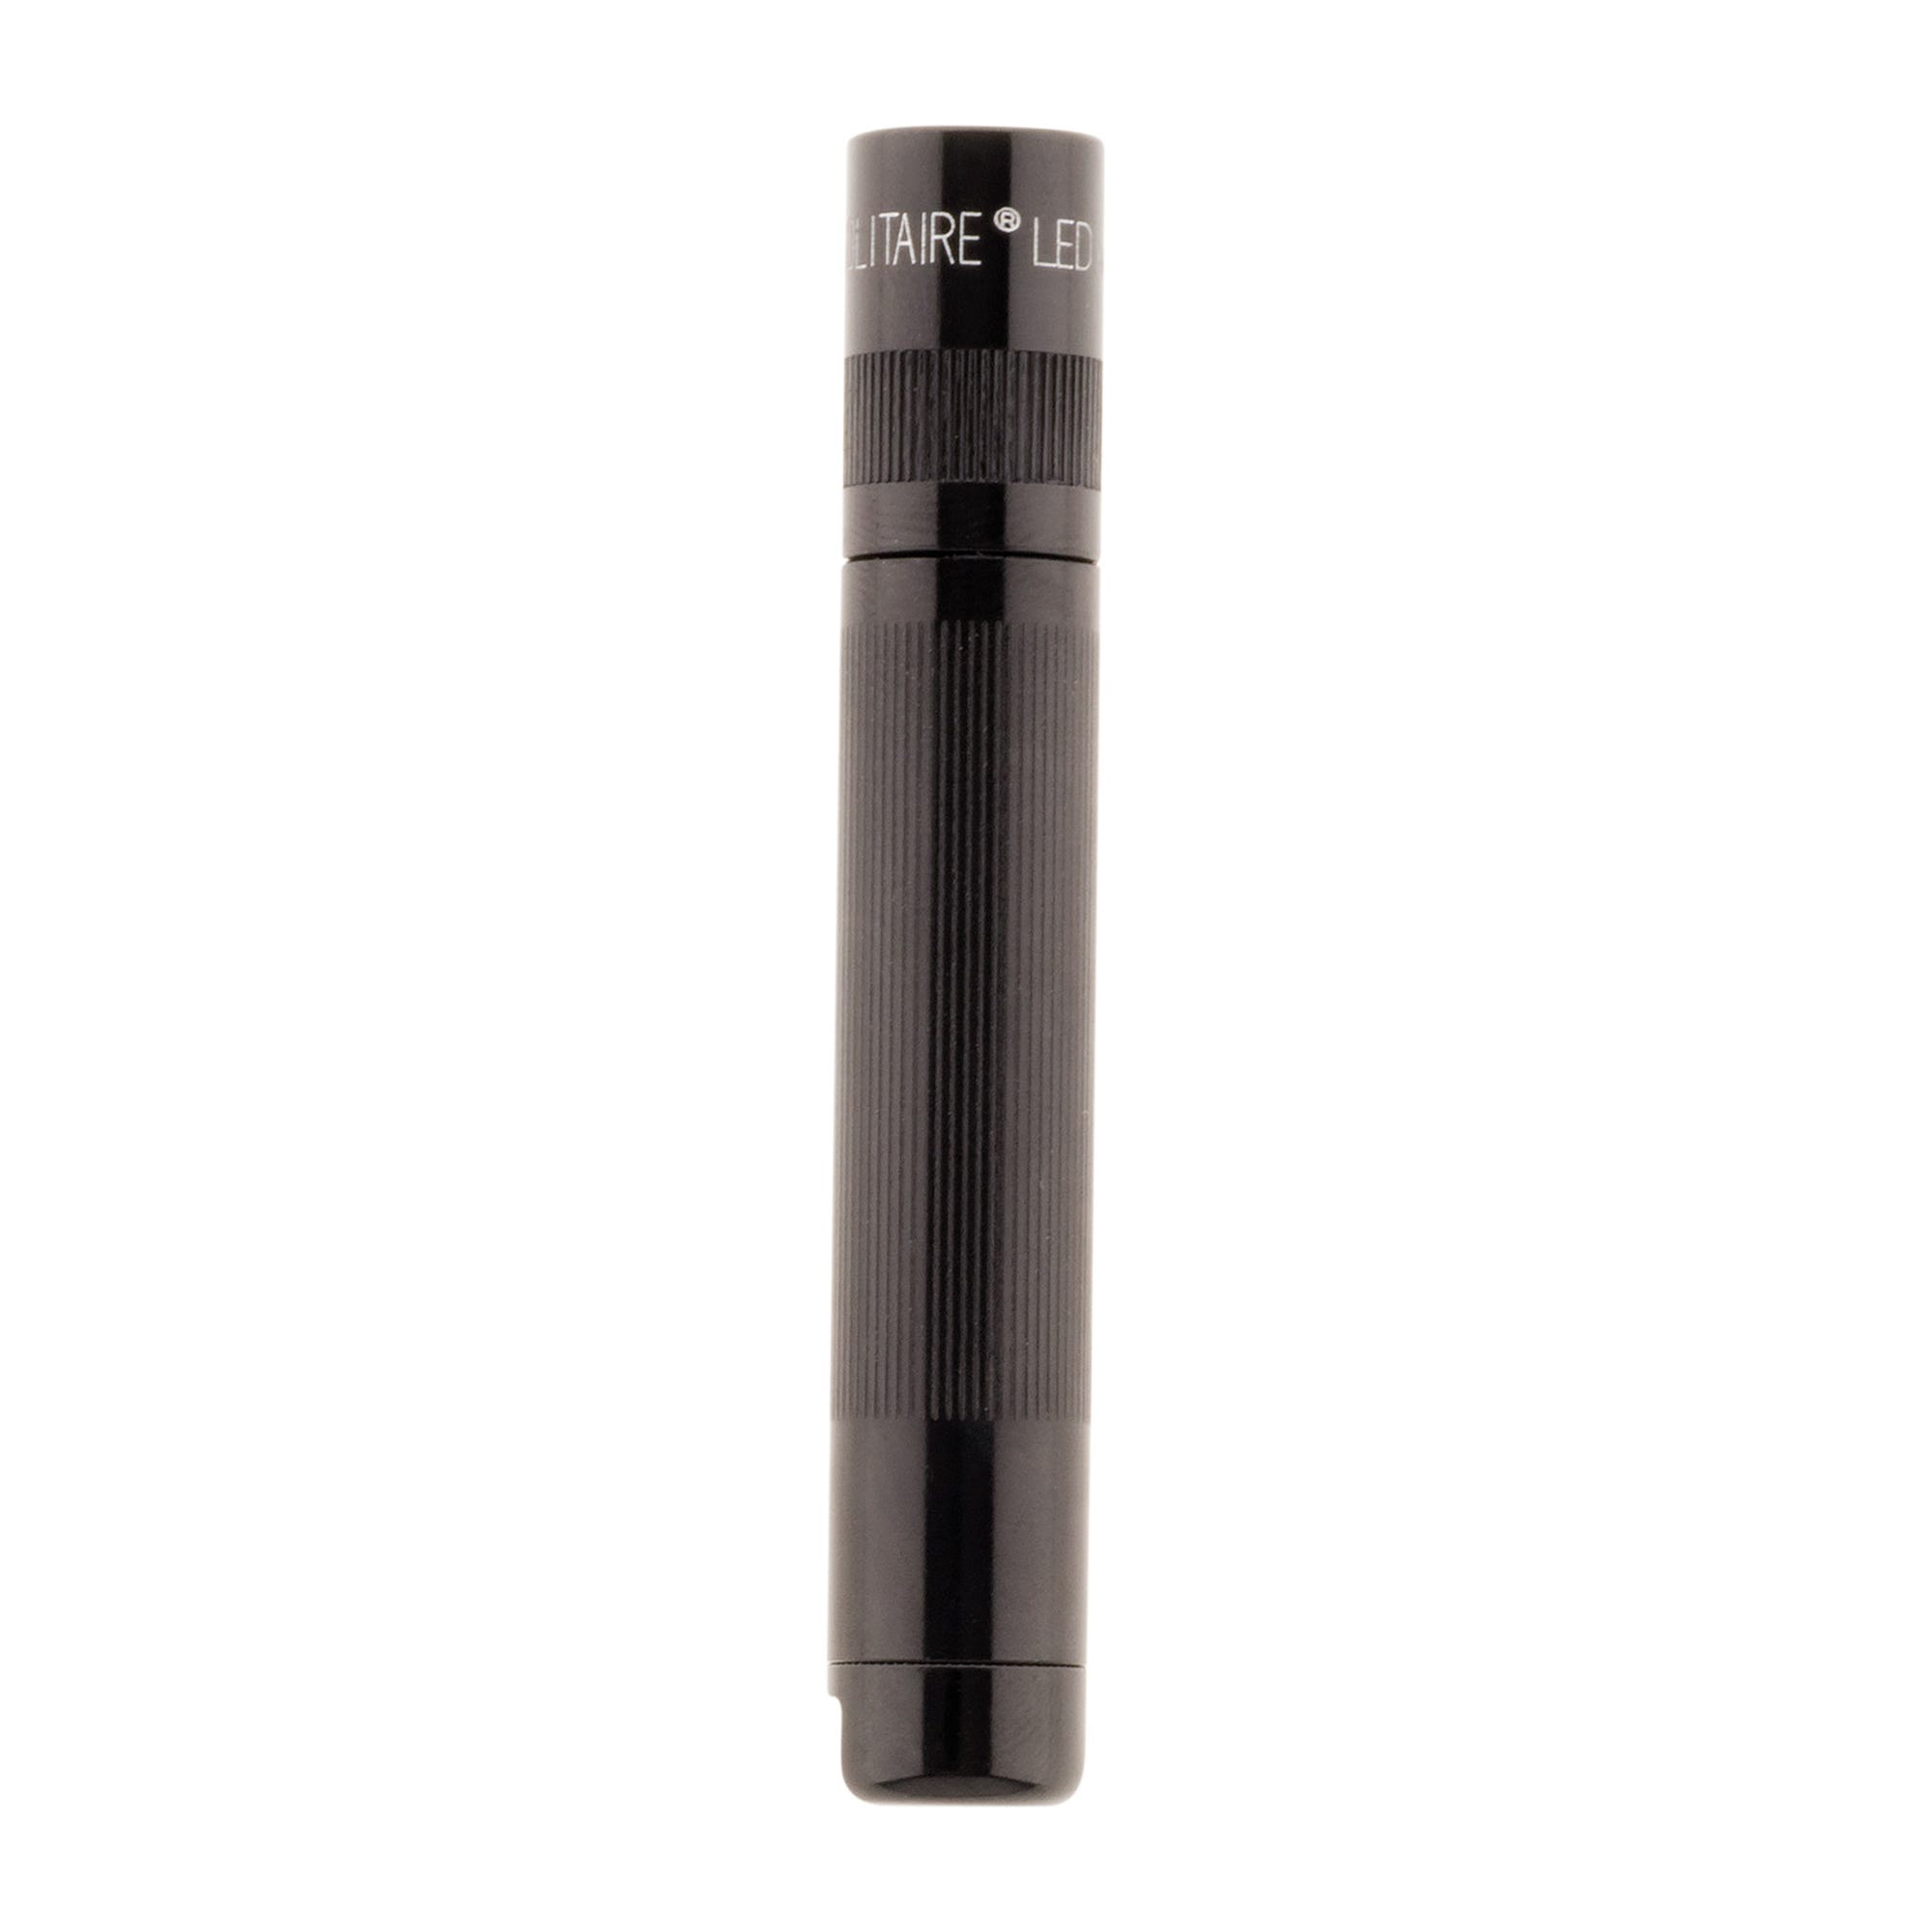 Mini lampe de poche Maglite Solitaire K3A 1 pile AAA 8 cm - Noir 1